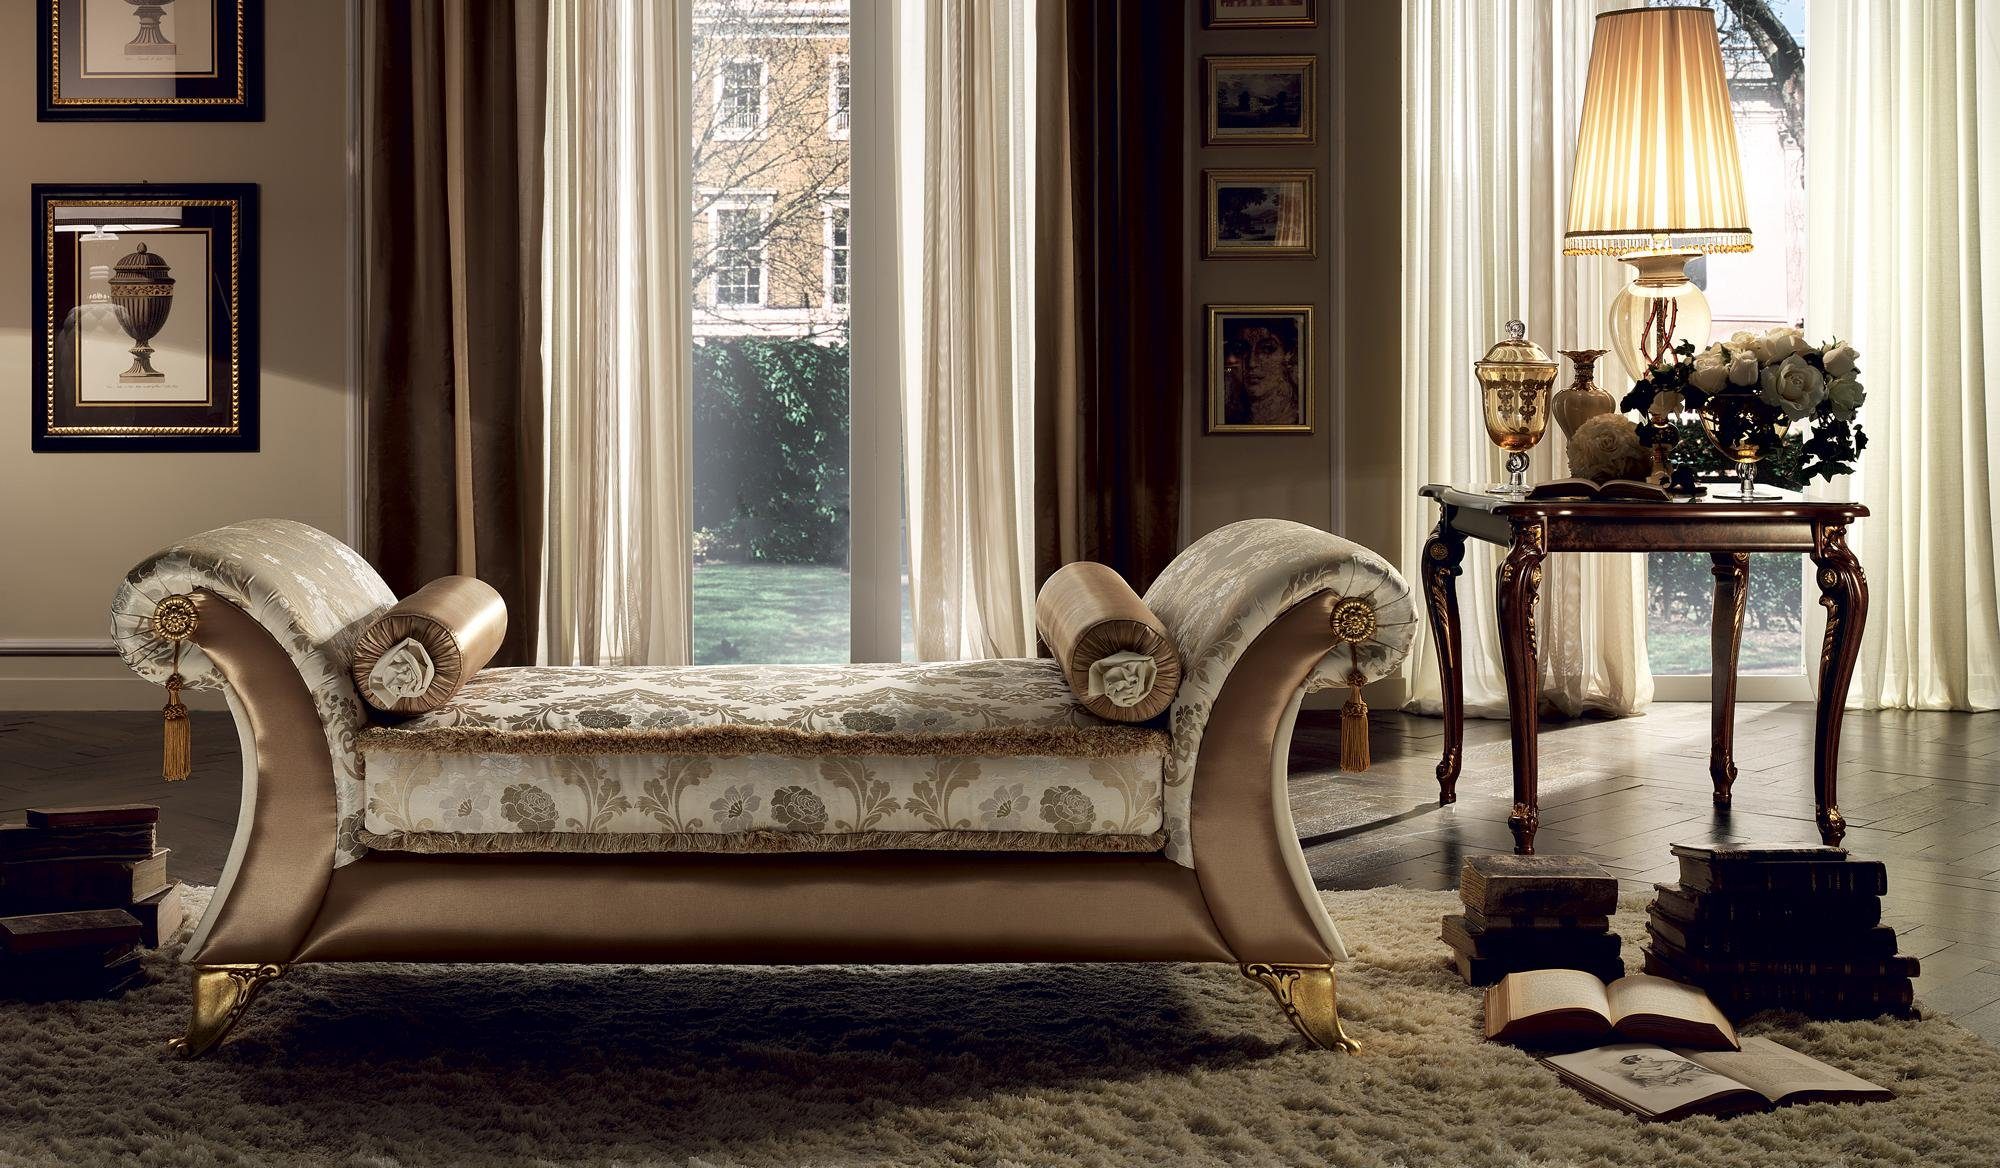 JVmoebel Chaiselongue Chaiselongue Liege Relaxsessel Liegesessel Komfortliege Luxus Barock, Made in Europe